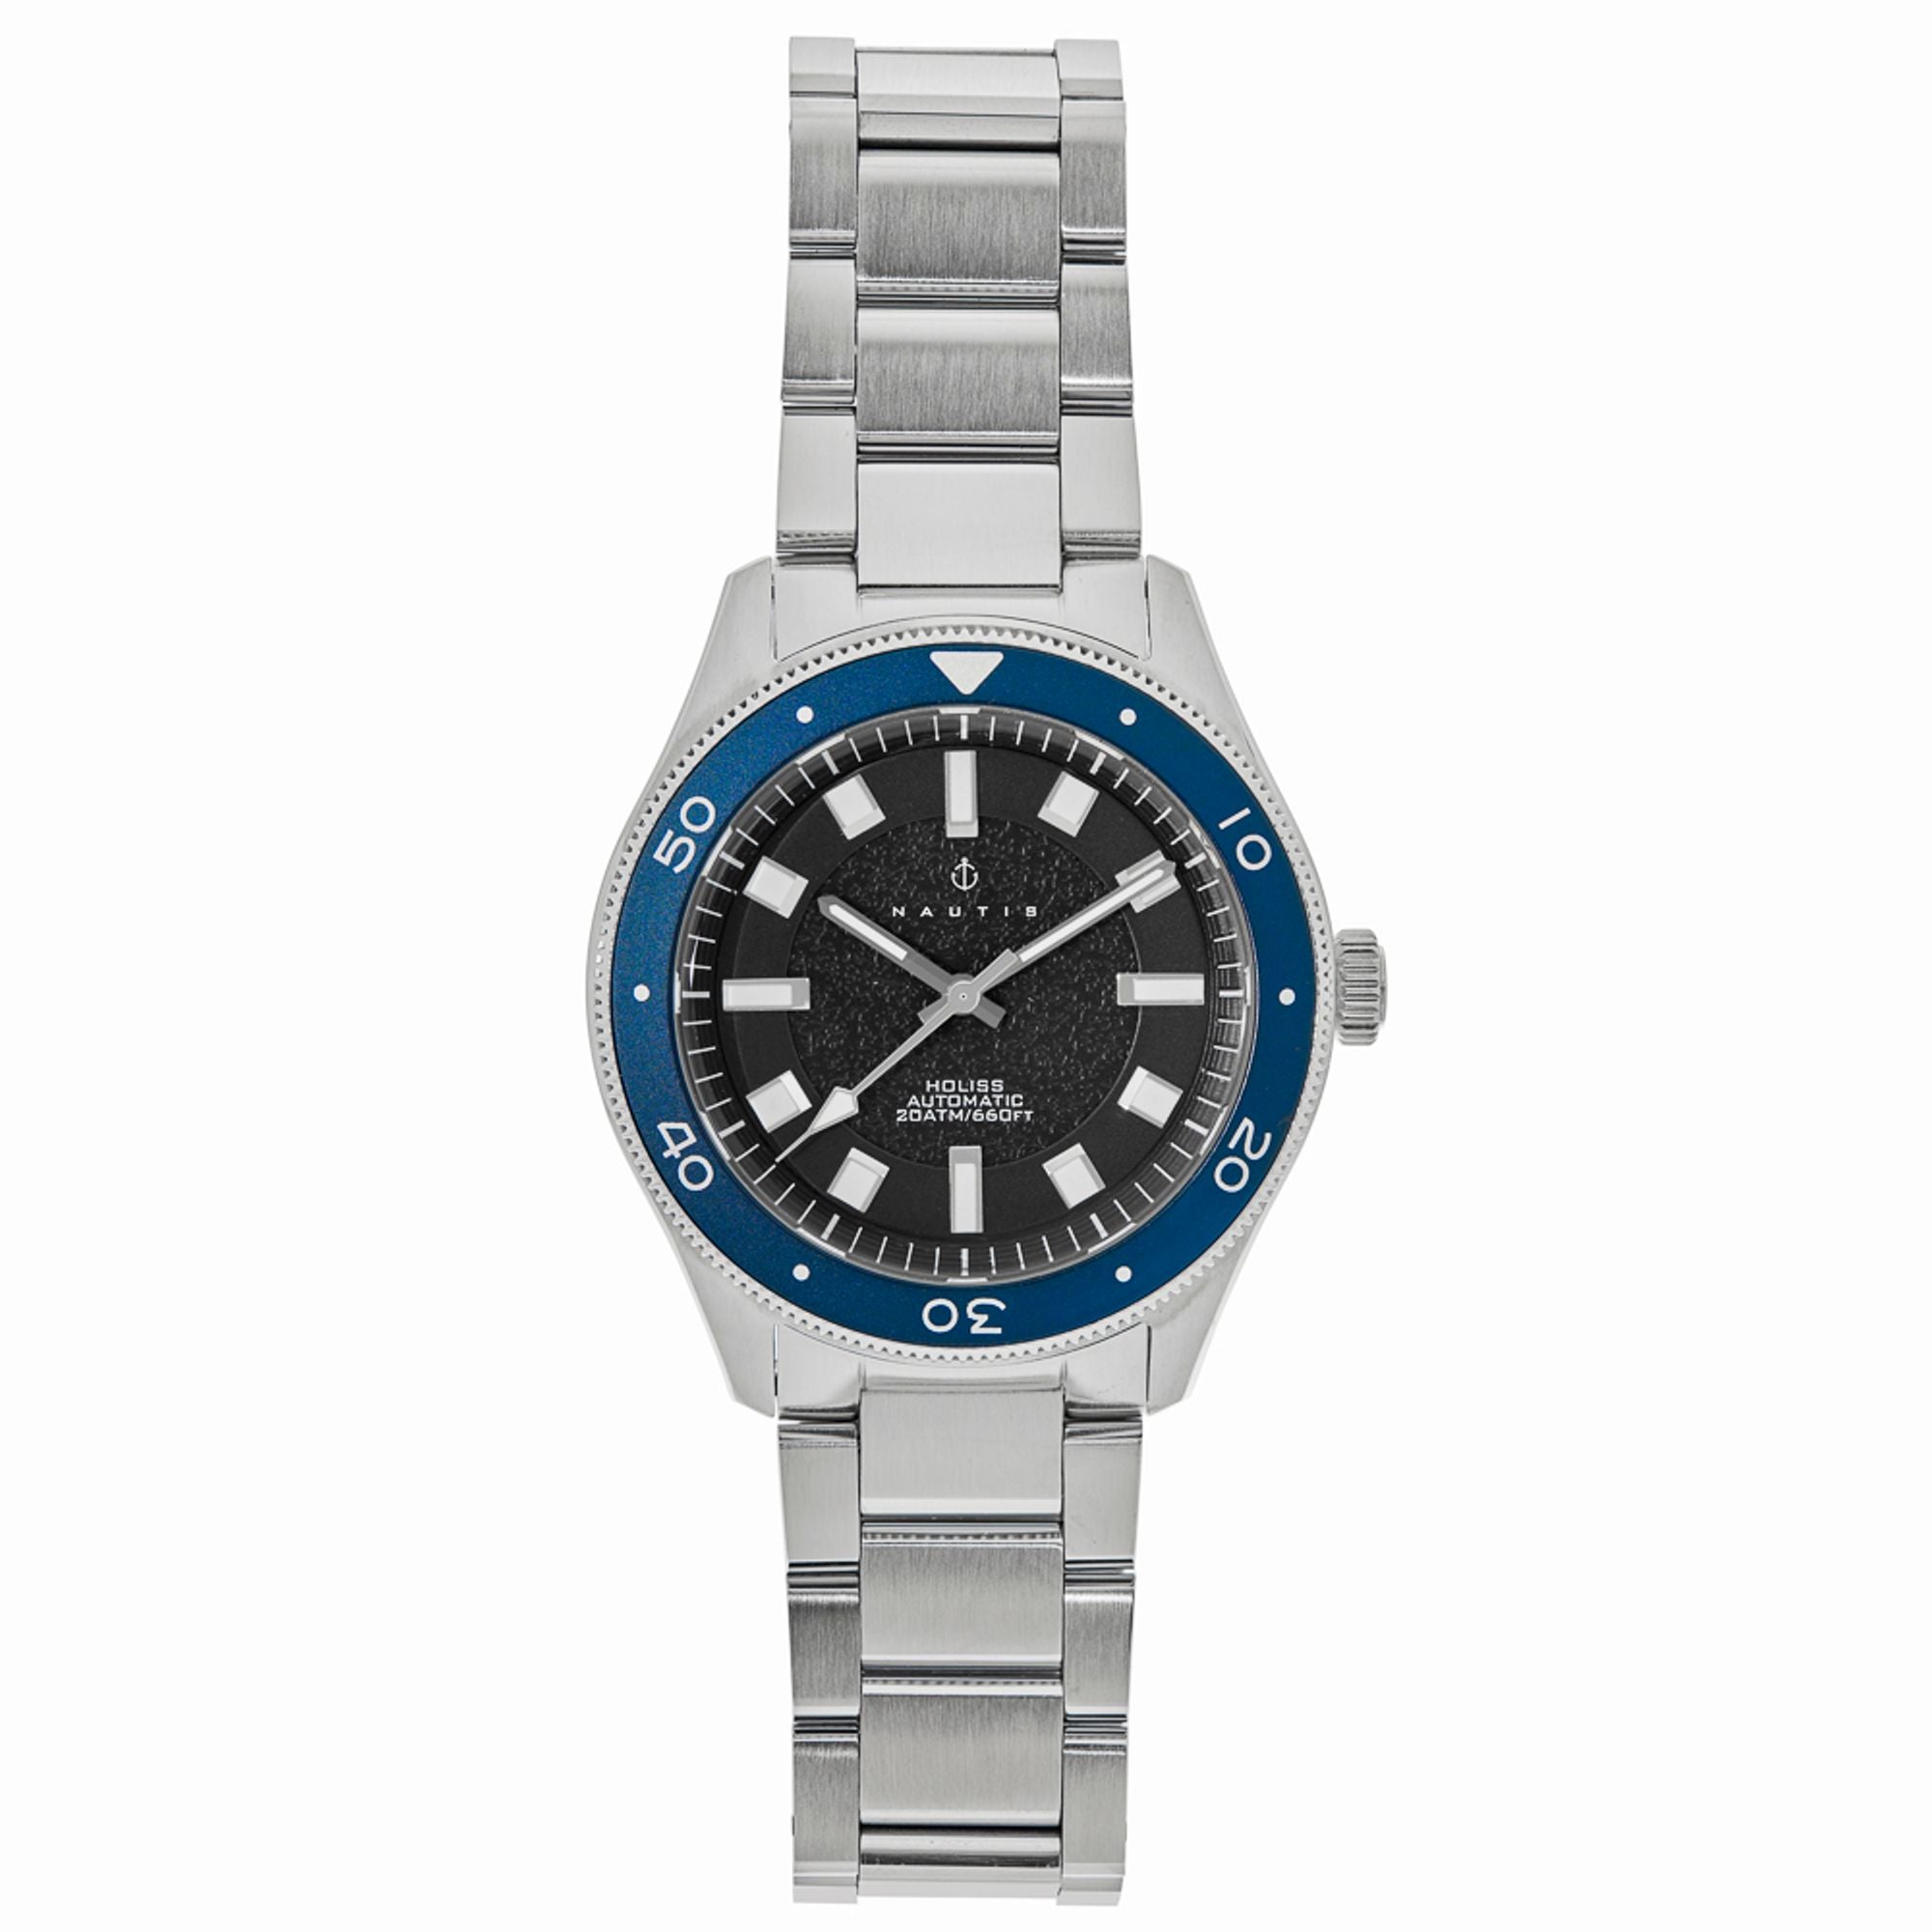 Nautis Holiss Automatic Watch - Silver/Blue - NAUN103-2